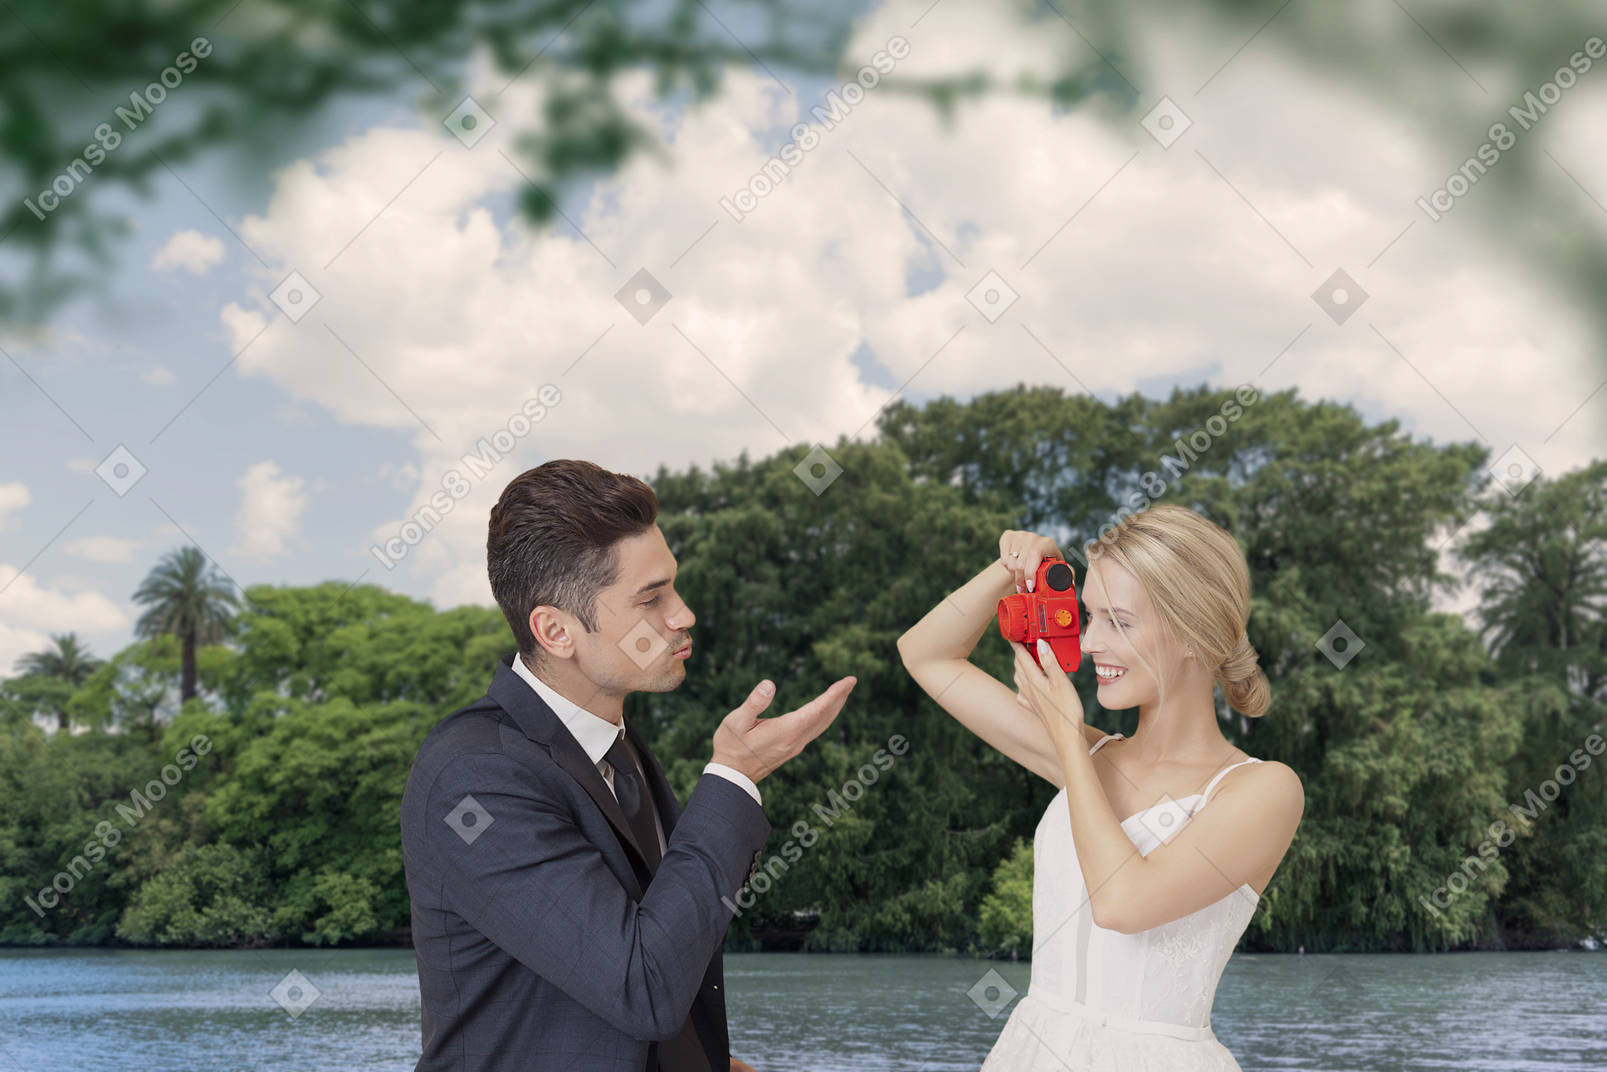 Une mariée heureuse prenant une photo de son marié lui soufflant un baiser sous les arbres verts près de la rivière